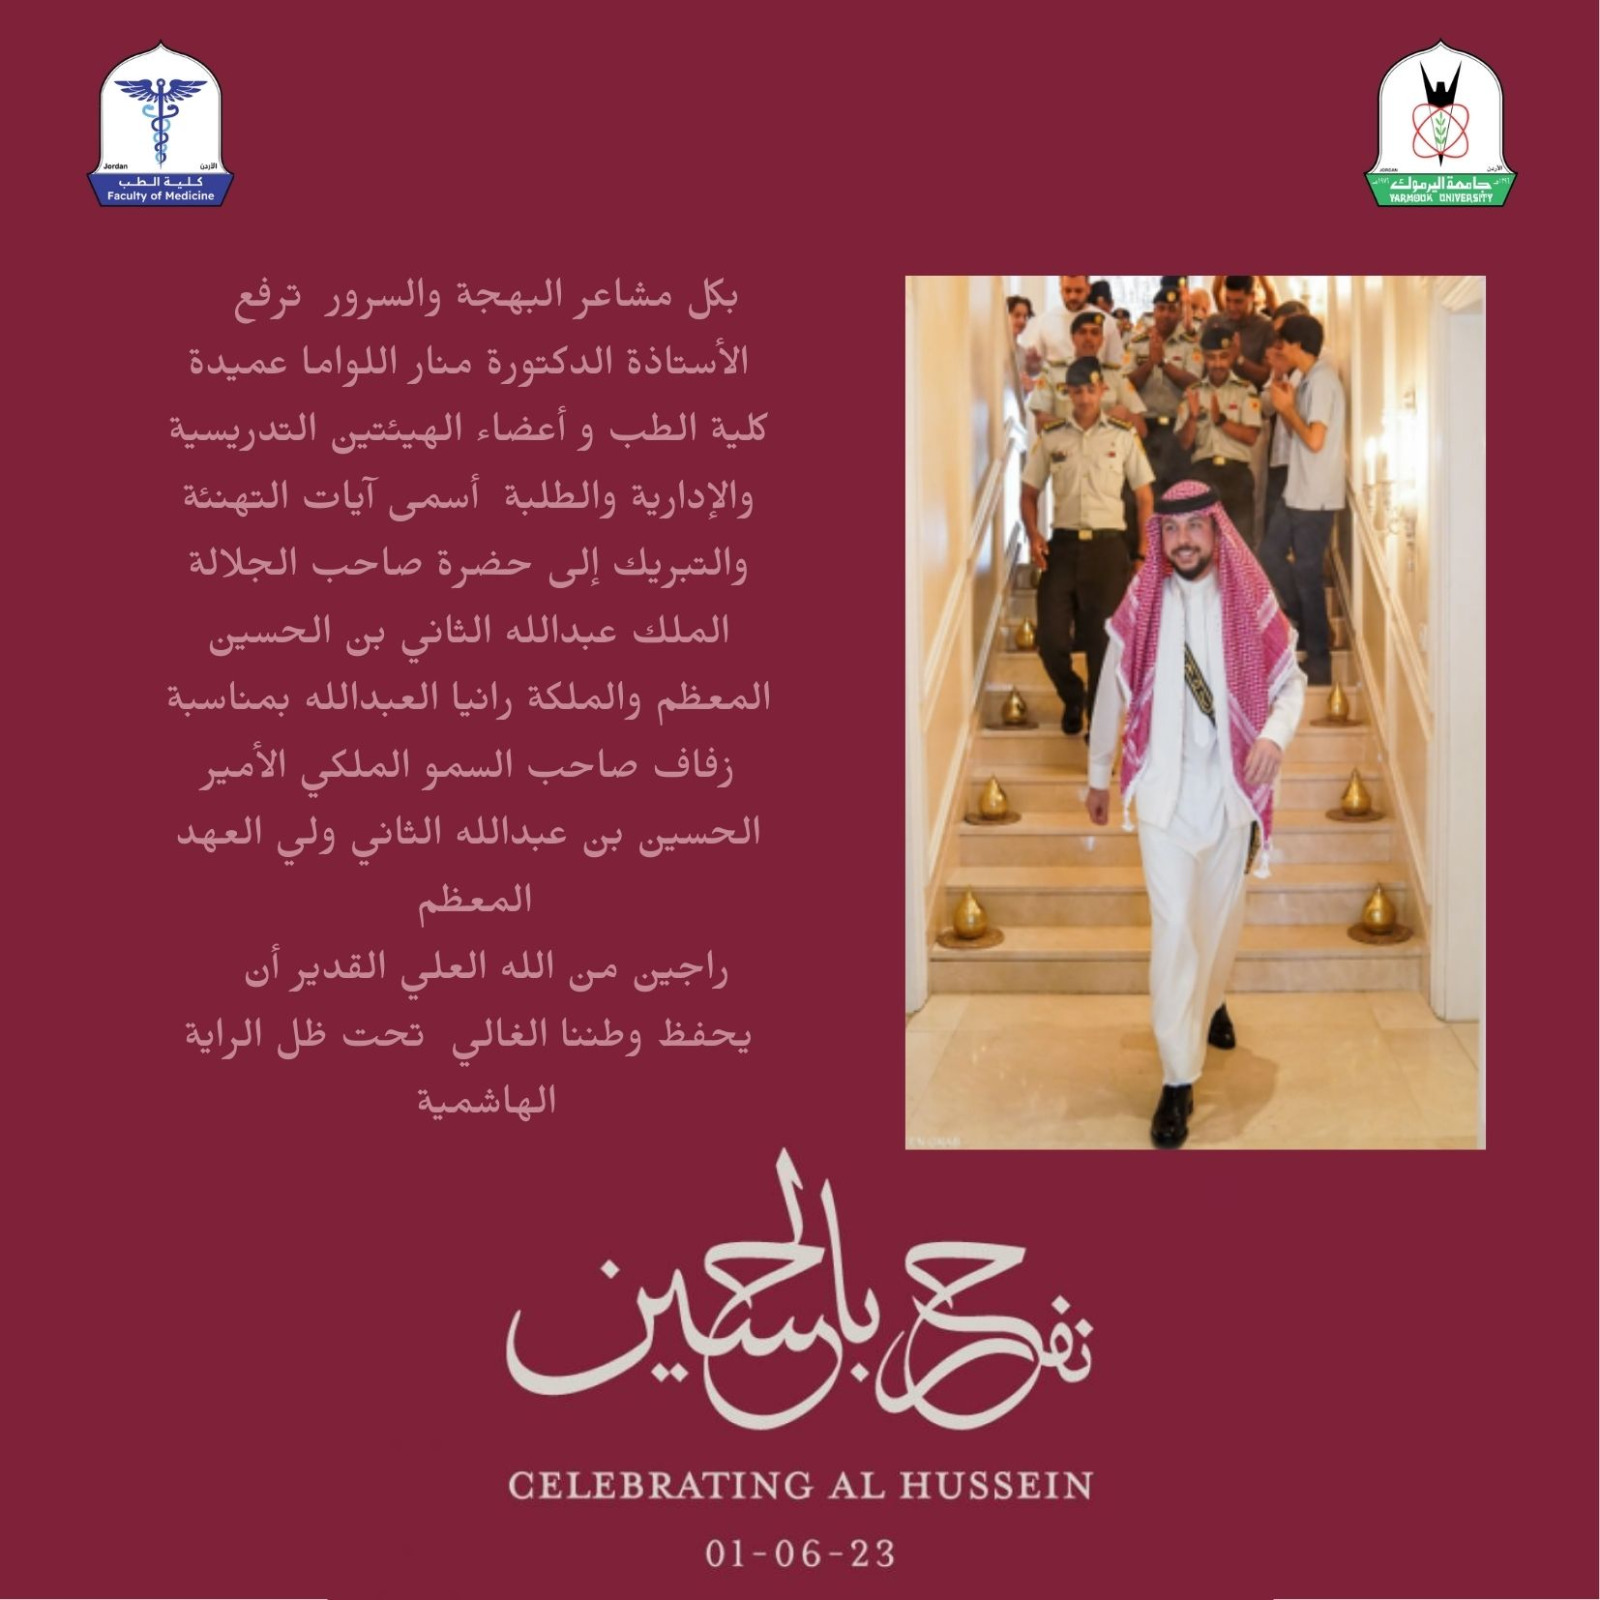 تهنئة كلية الطب بمناسبة زفاف الأمير الحسين بن عبدالله الثاني 